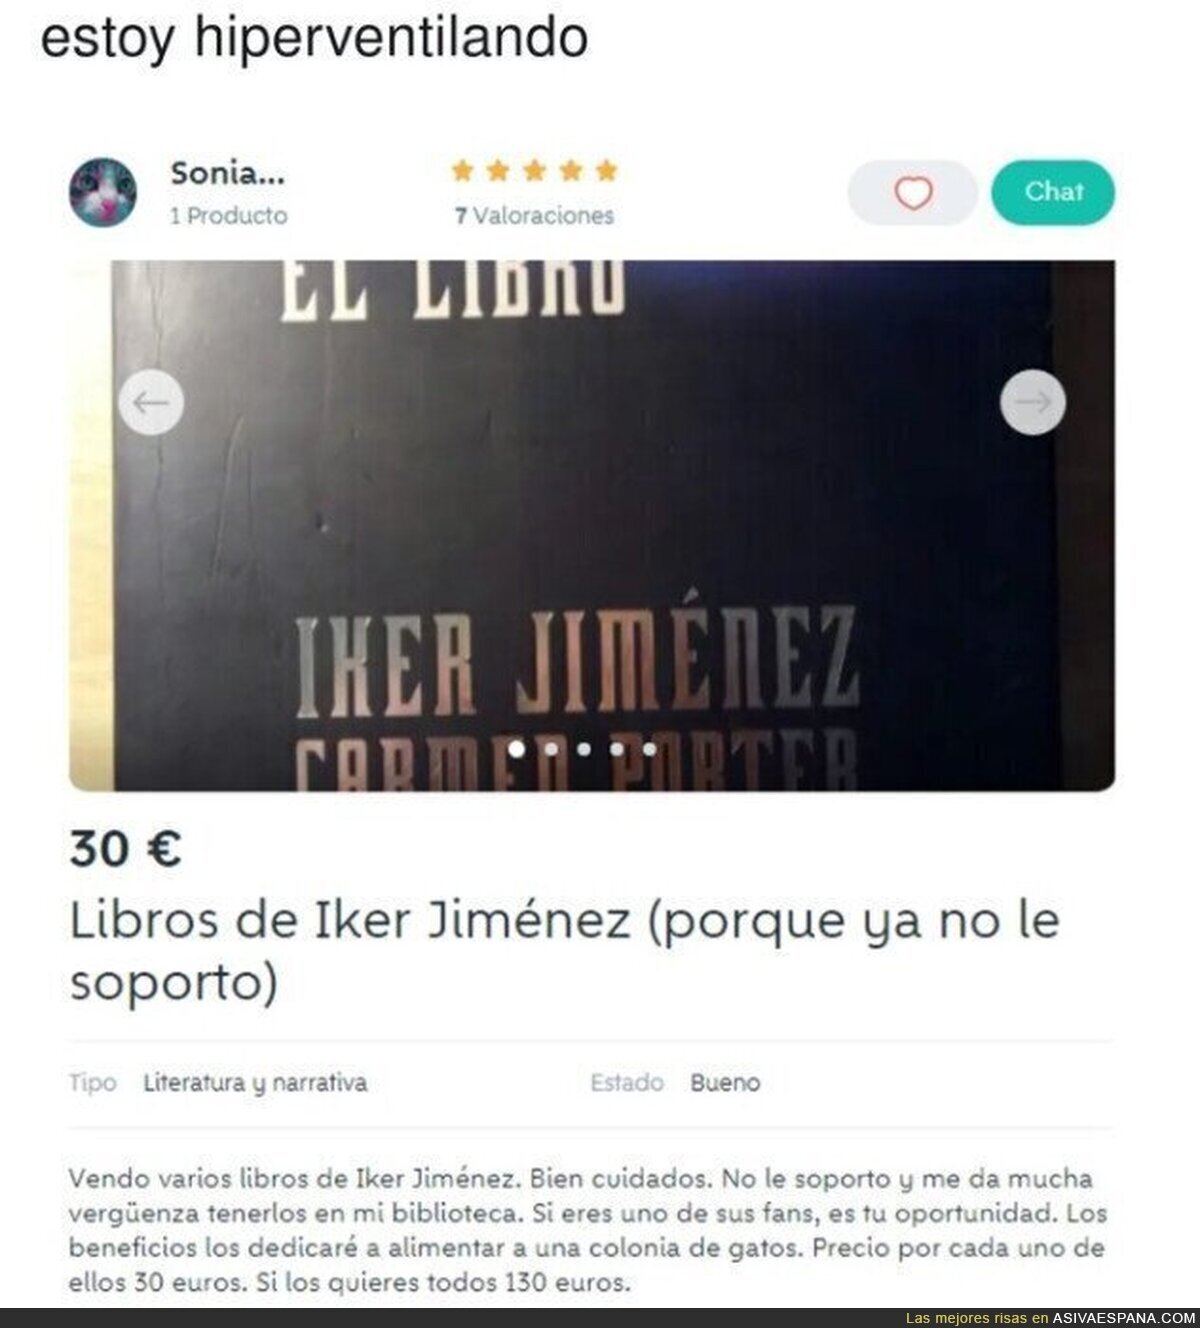 Gran descripción para vender los libros de Iker Jiménez